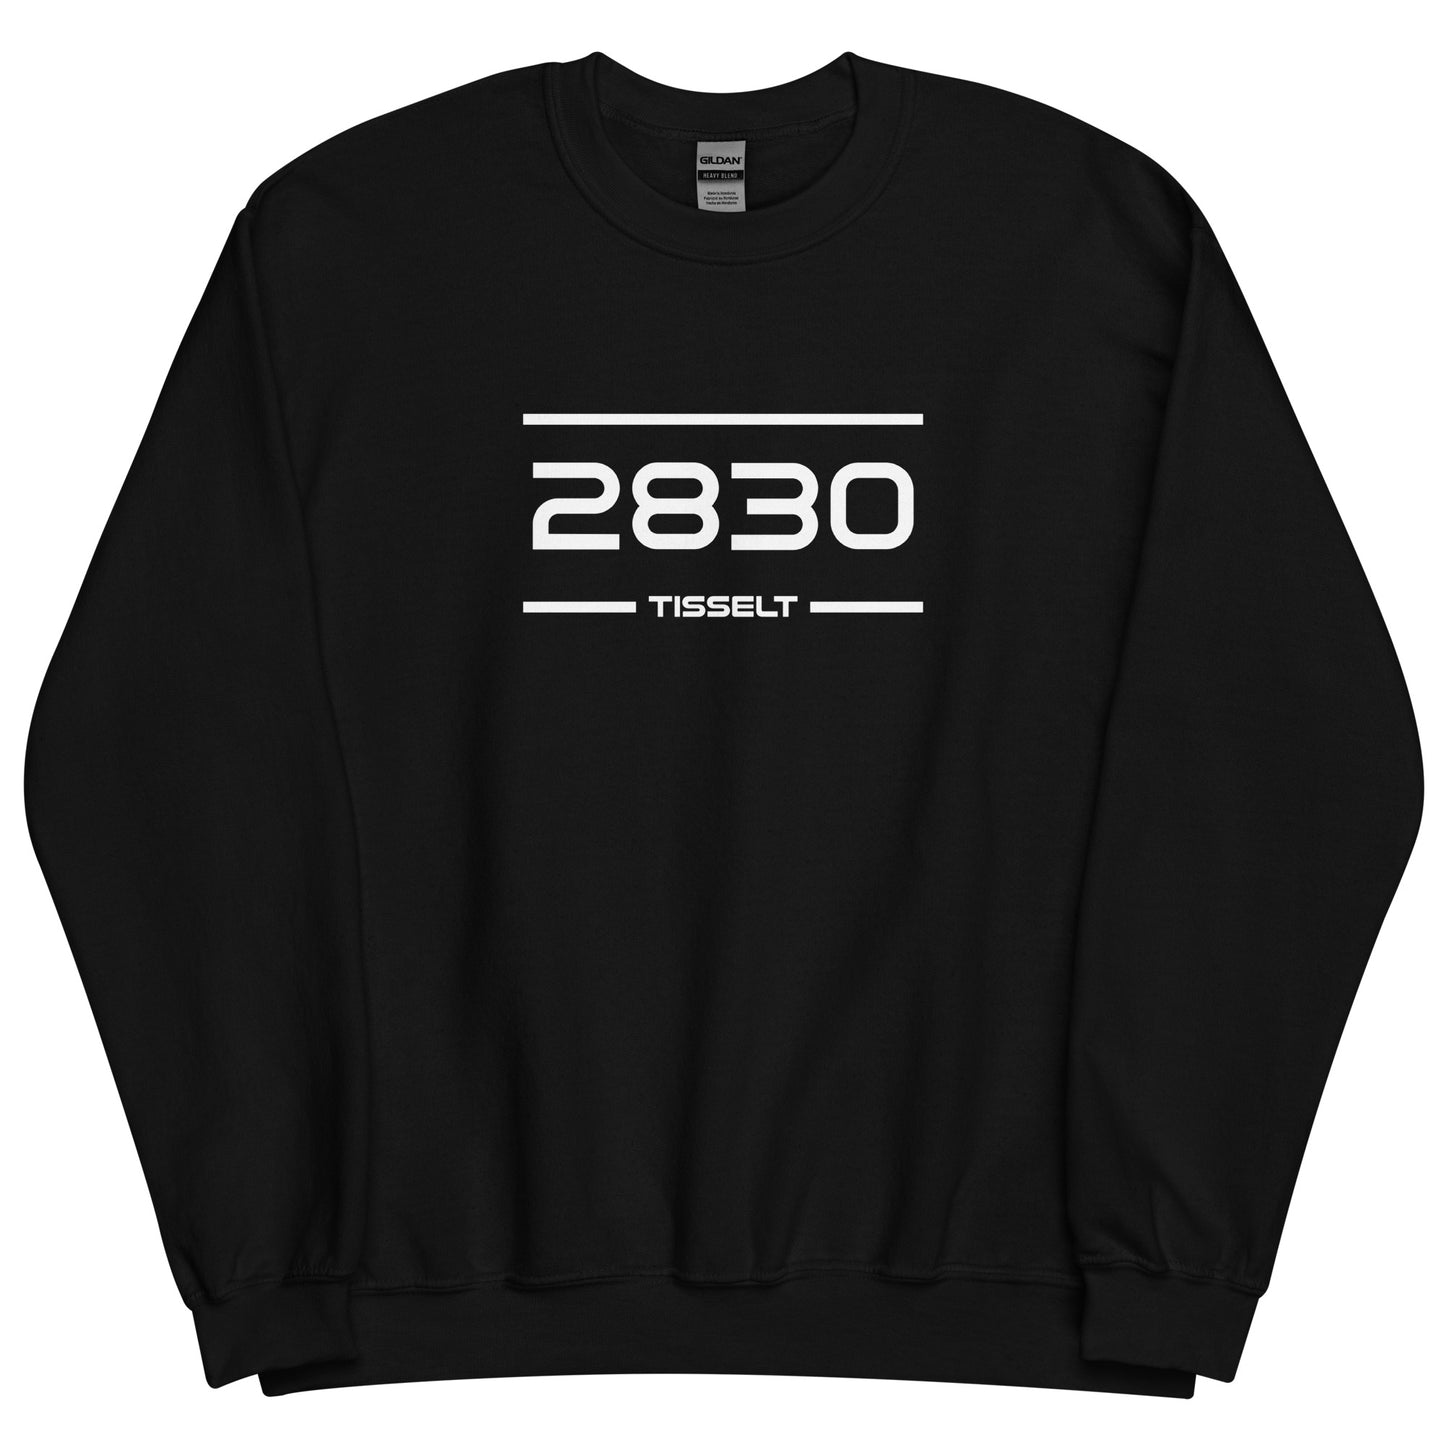 Sweater - 2830 - Tisselt (M/V)